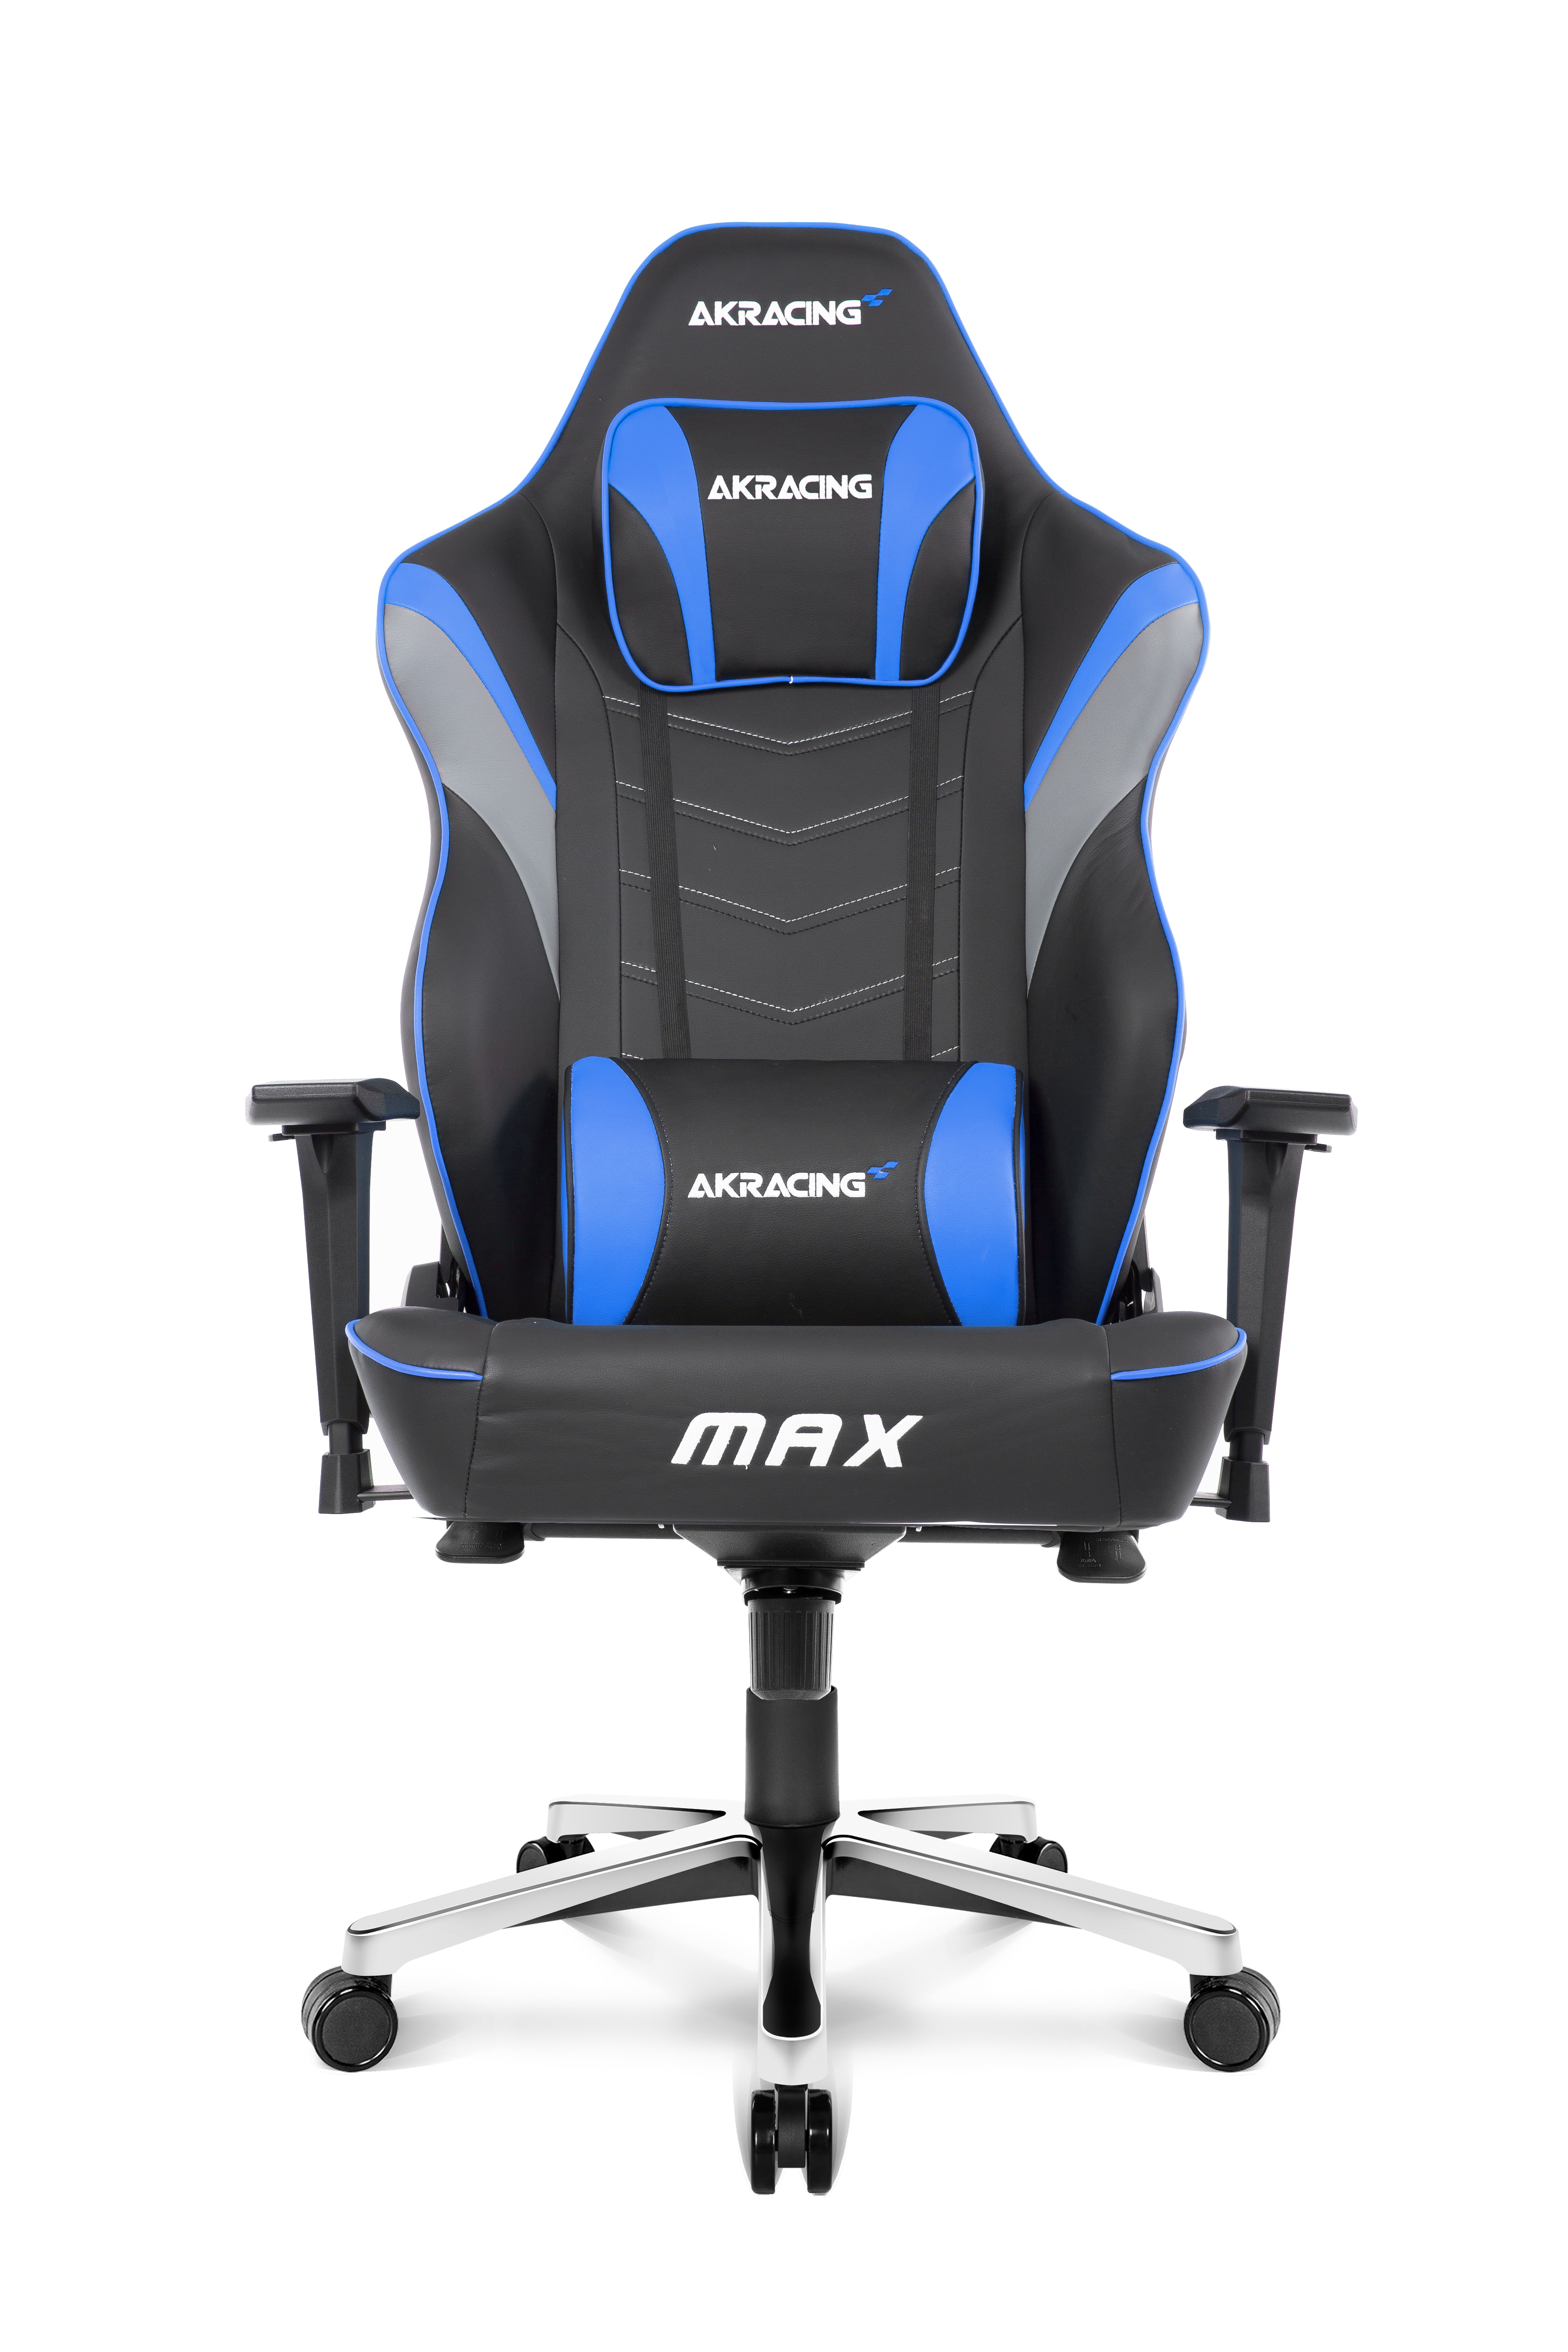 AKRacing Max Blue Gaming Chair